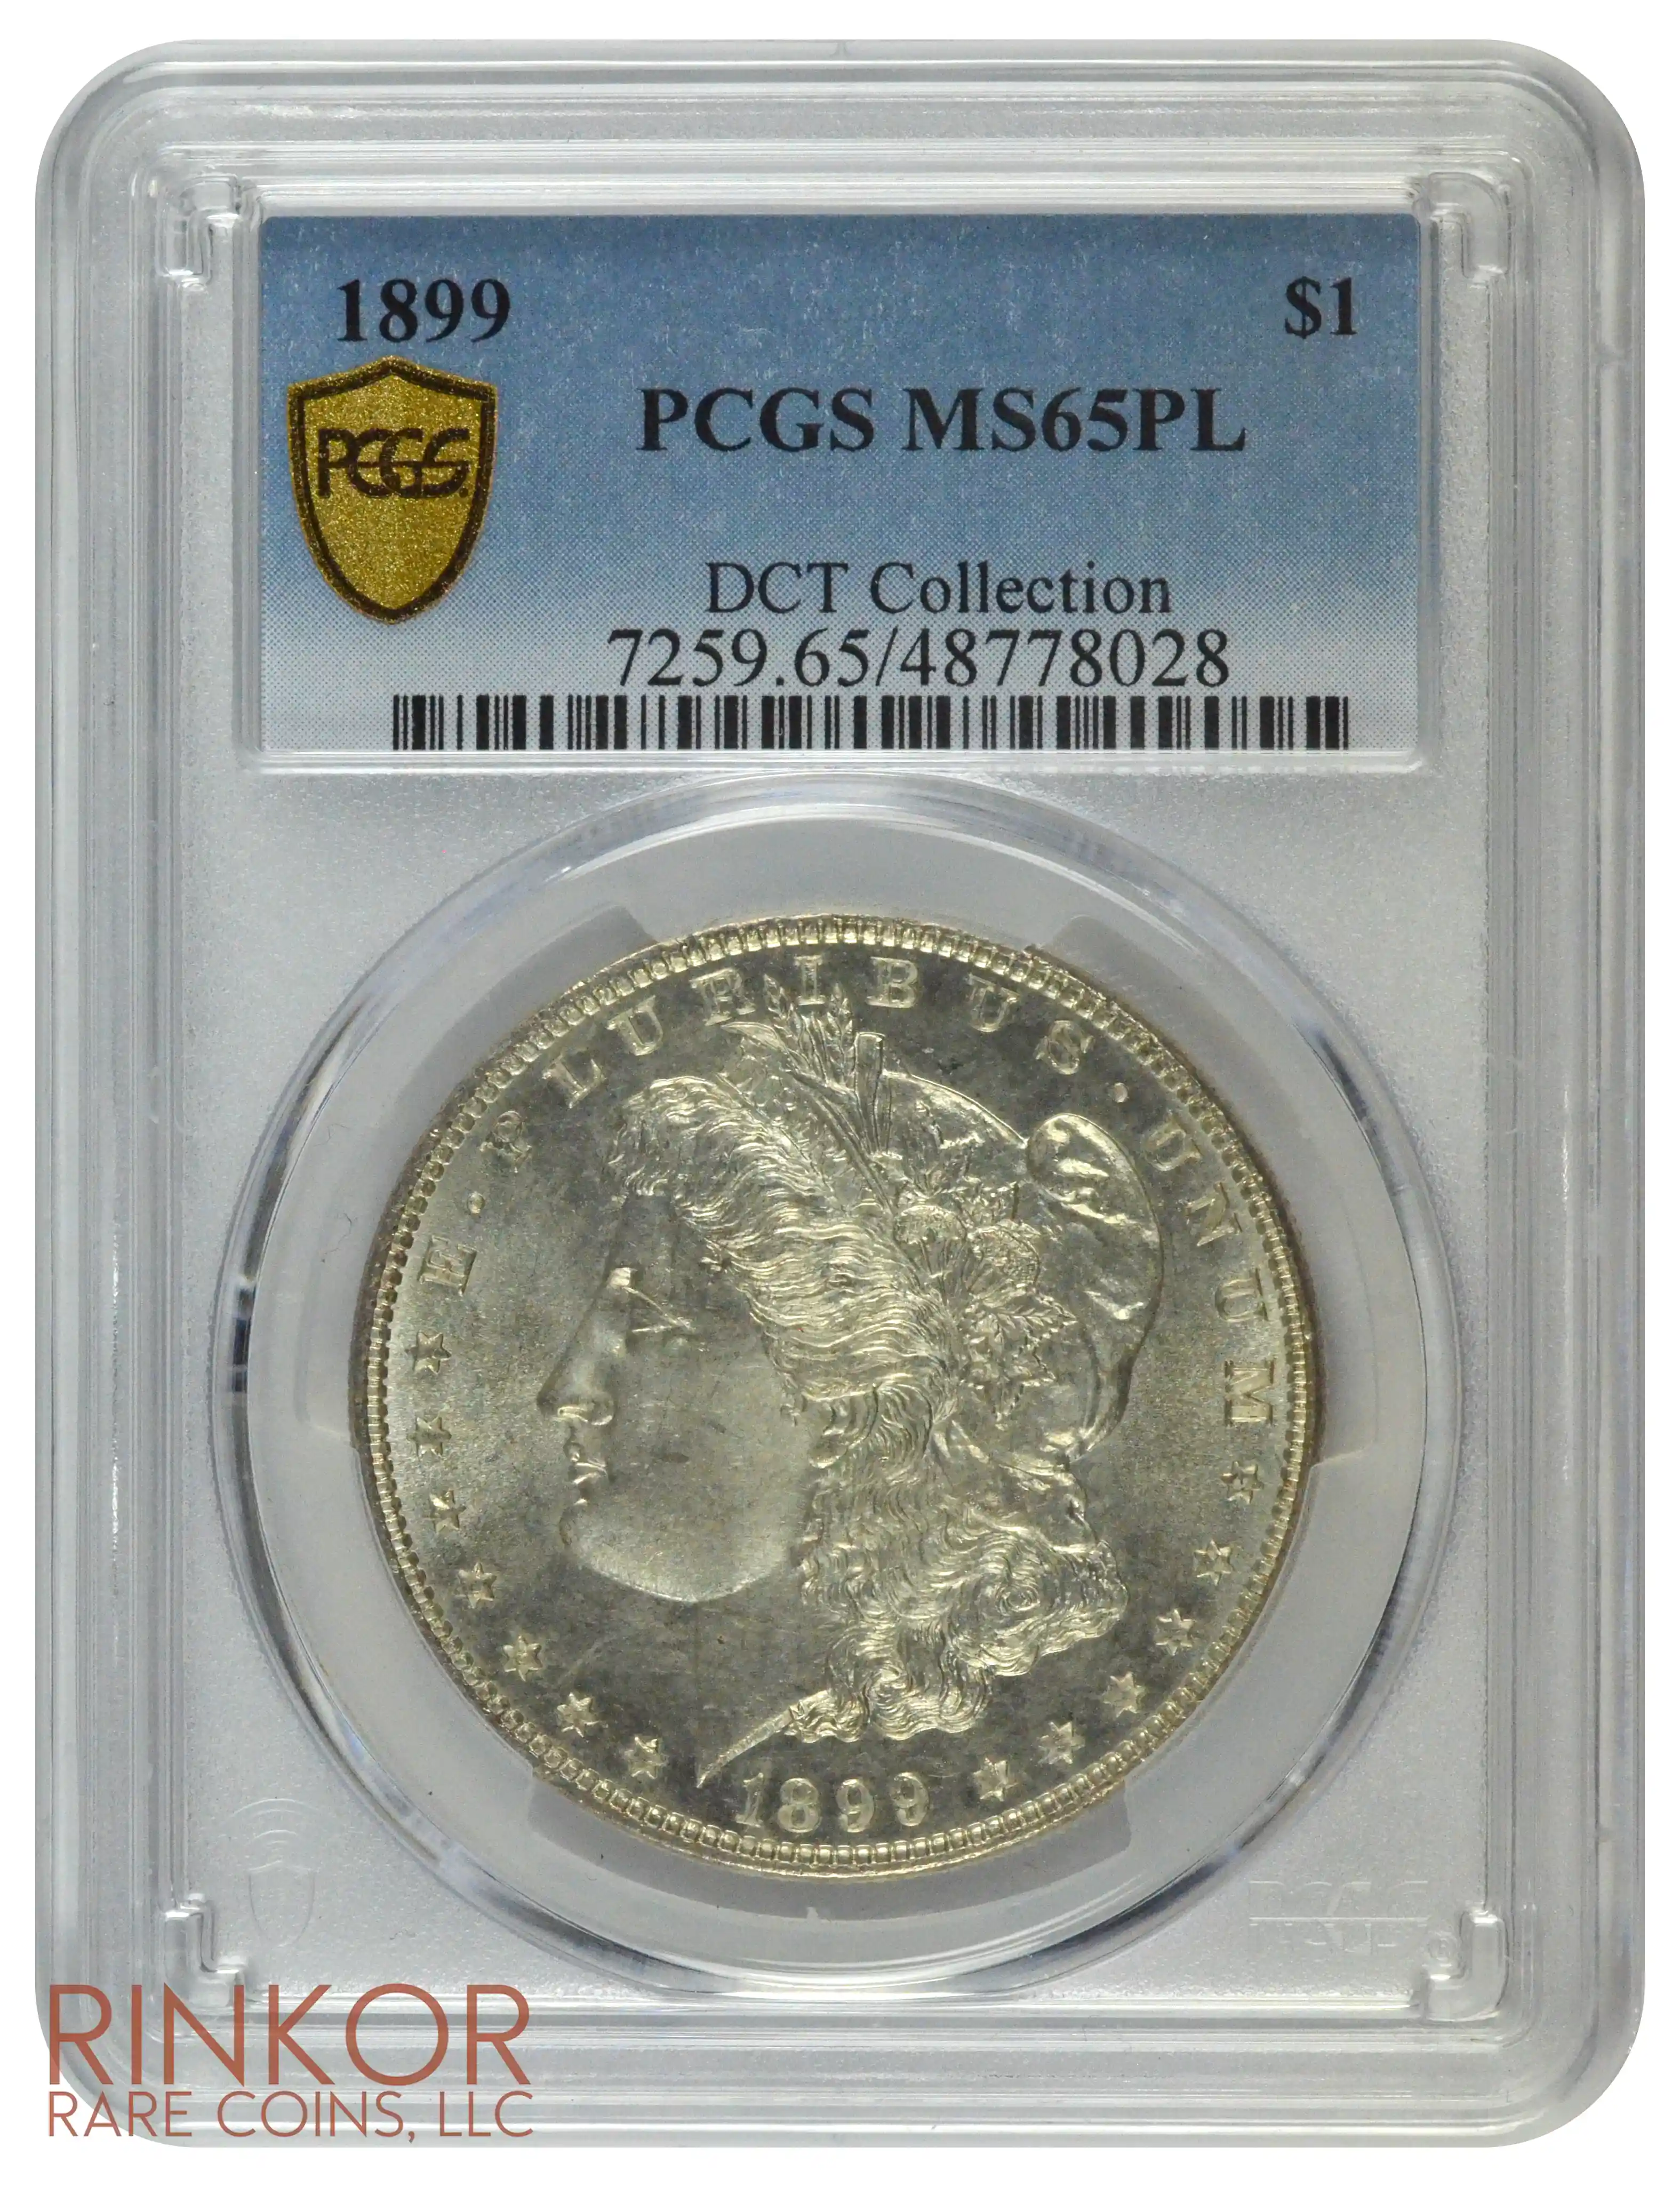 1899 $1 PCGS MS 65 PL